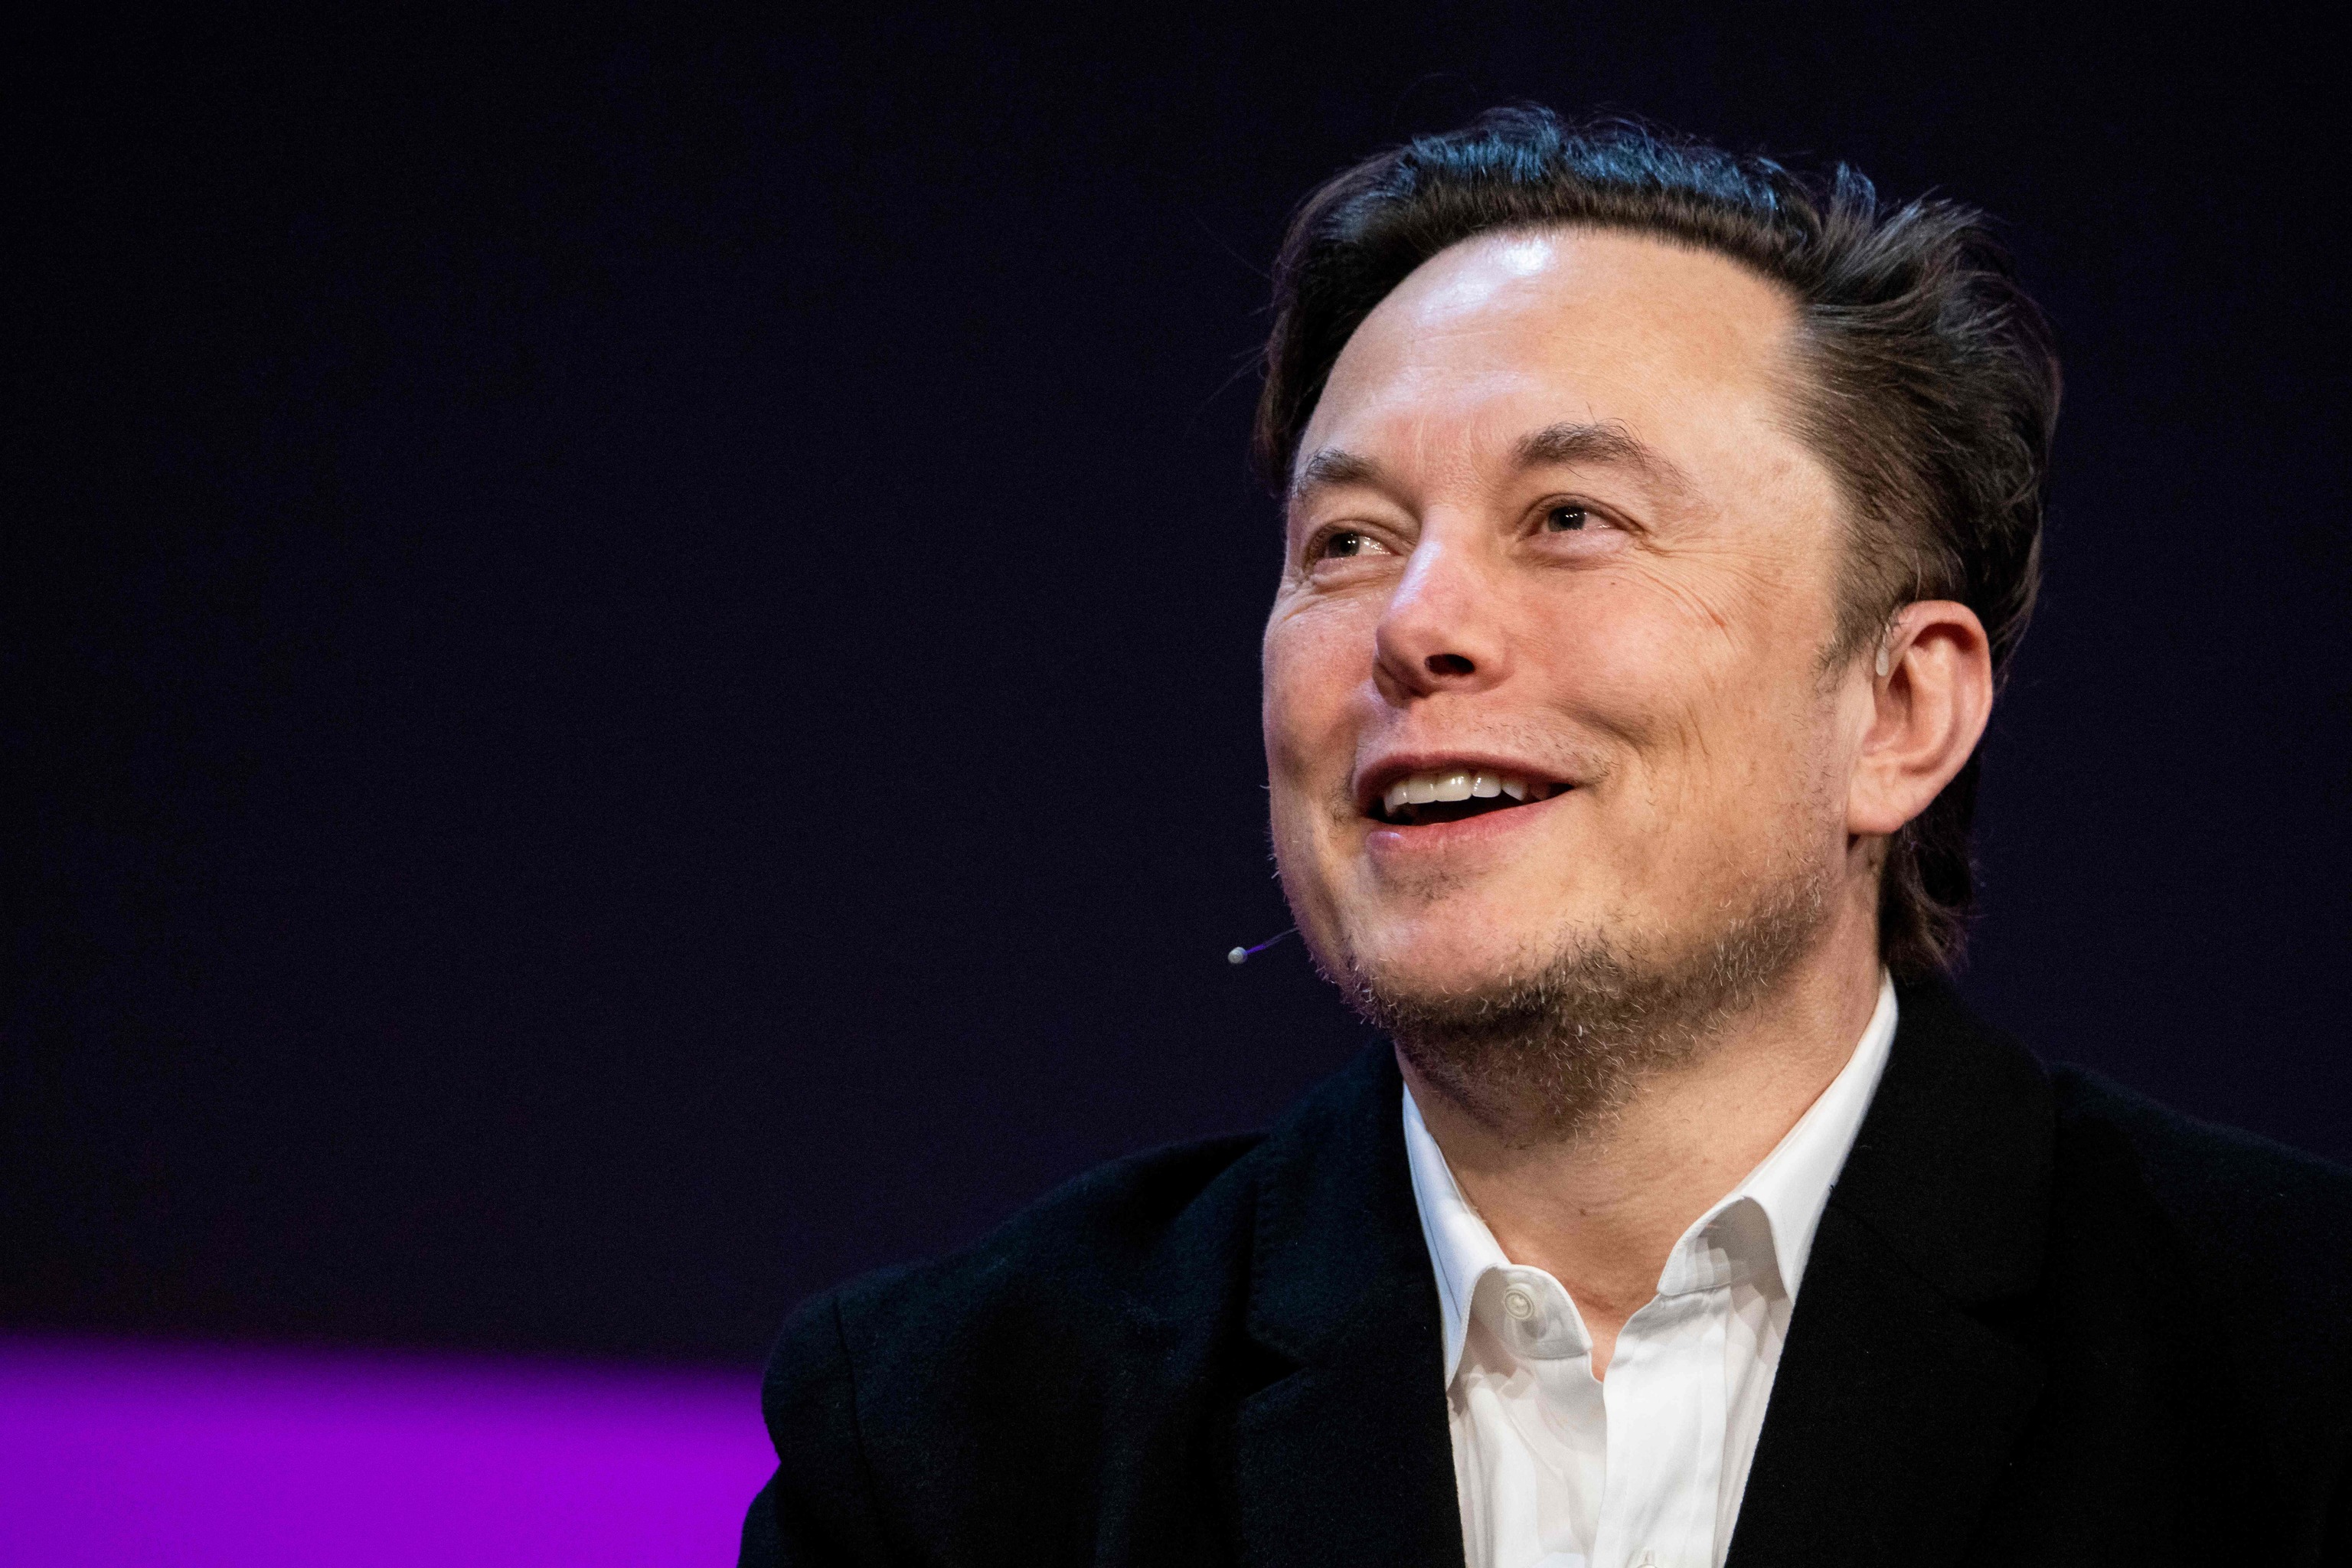 Elon Musk compra Twitter por 44.000 millones de dólares | Empresas